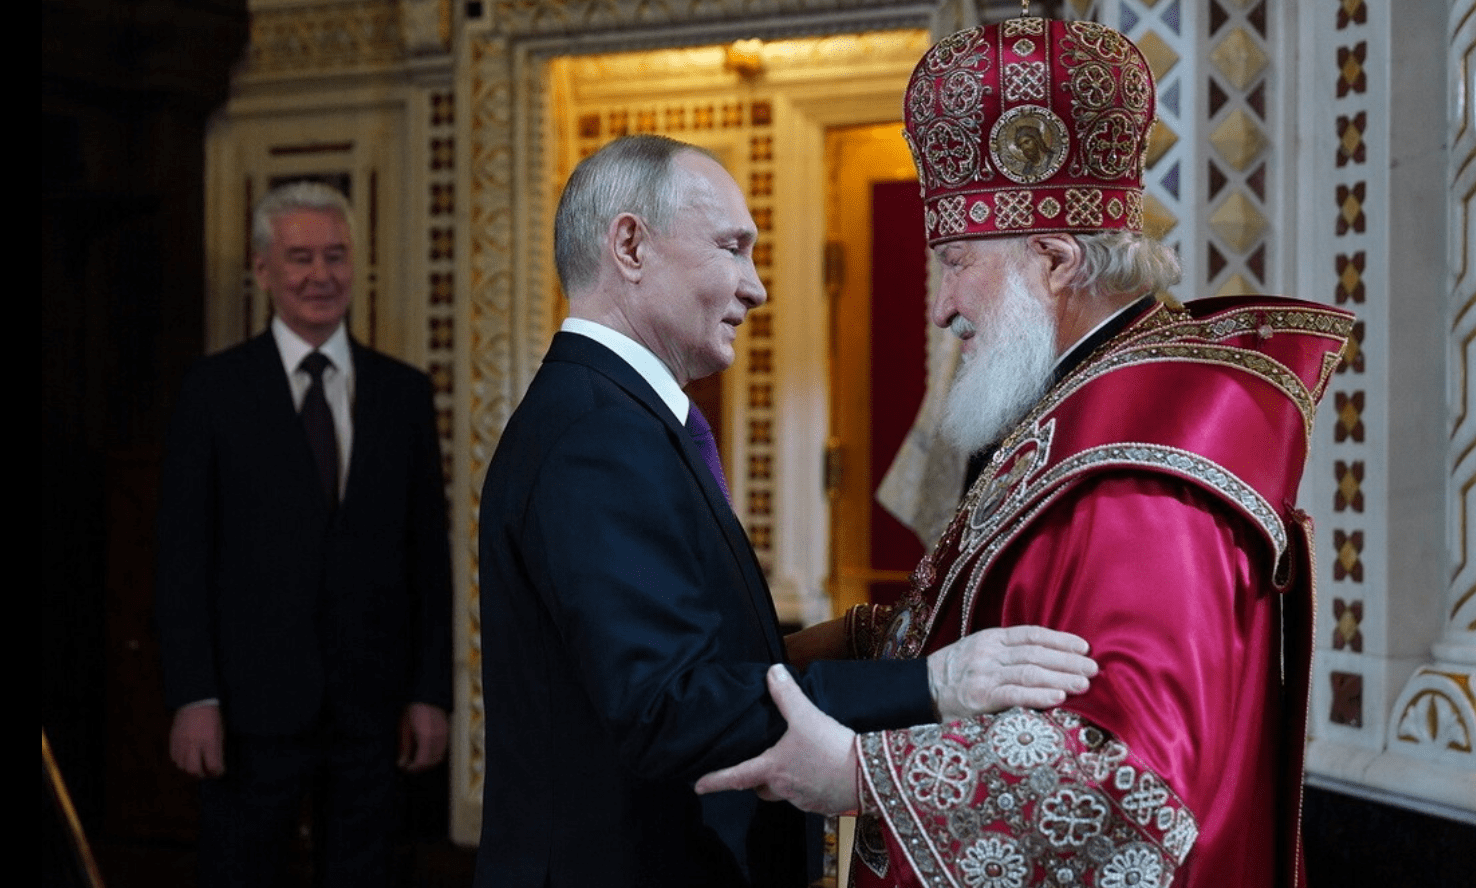 La chiesa ortodossa di Kirill 'scomunica' la chiesa cattolica che benedice le coppie gay: "Immorale"